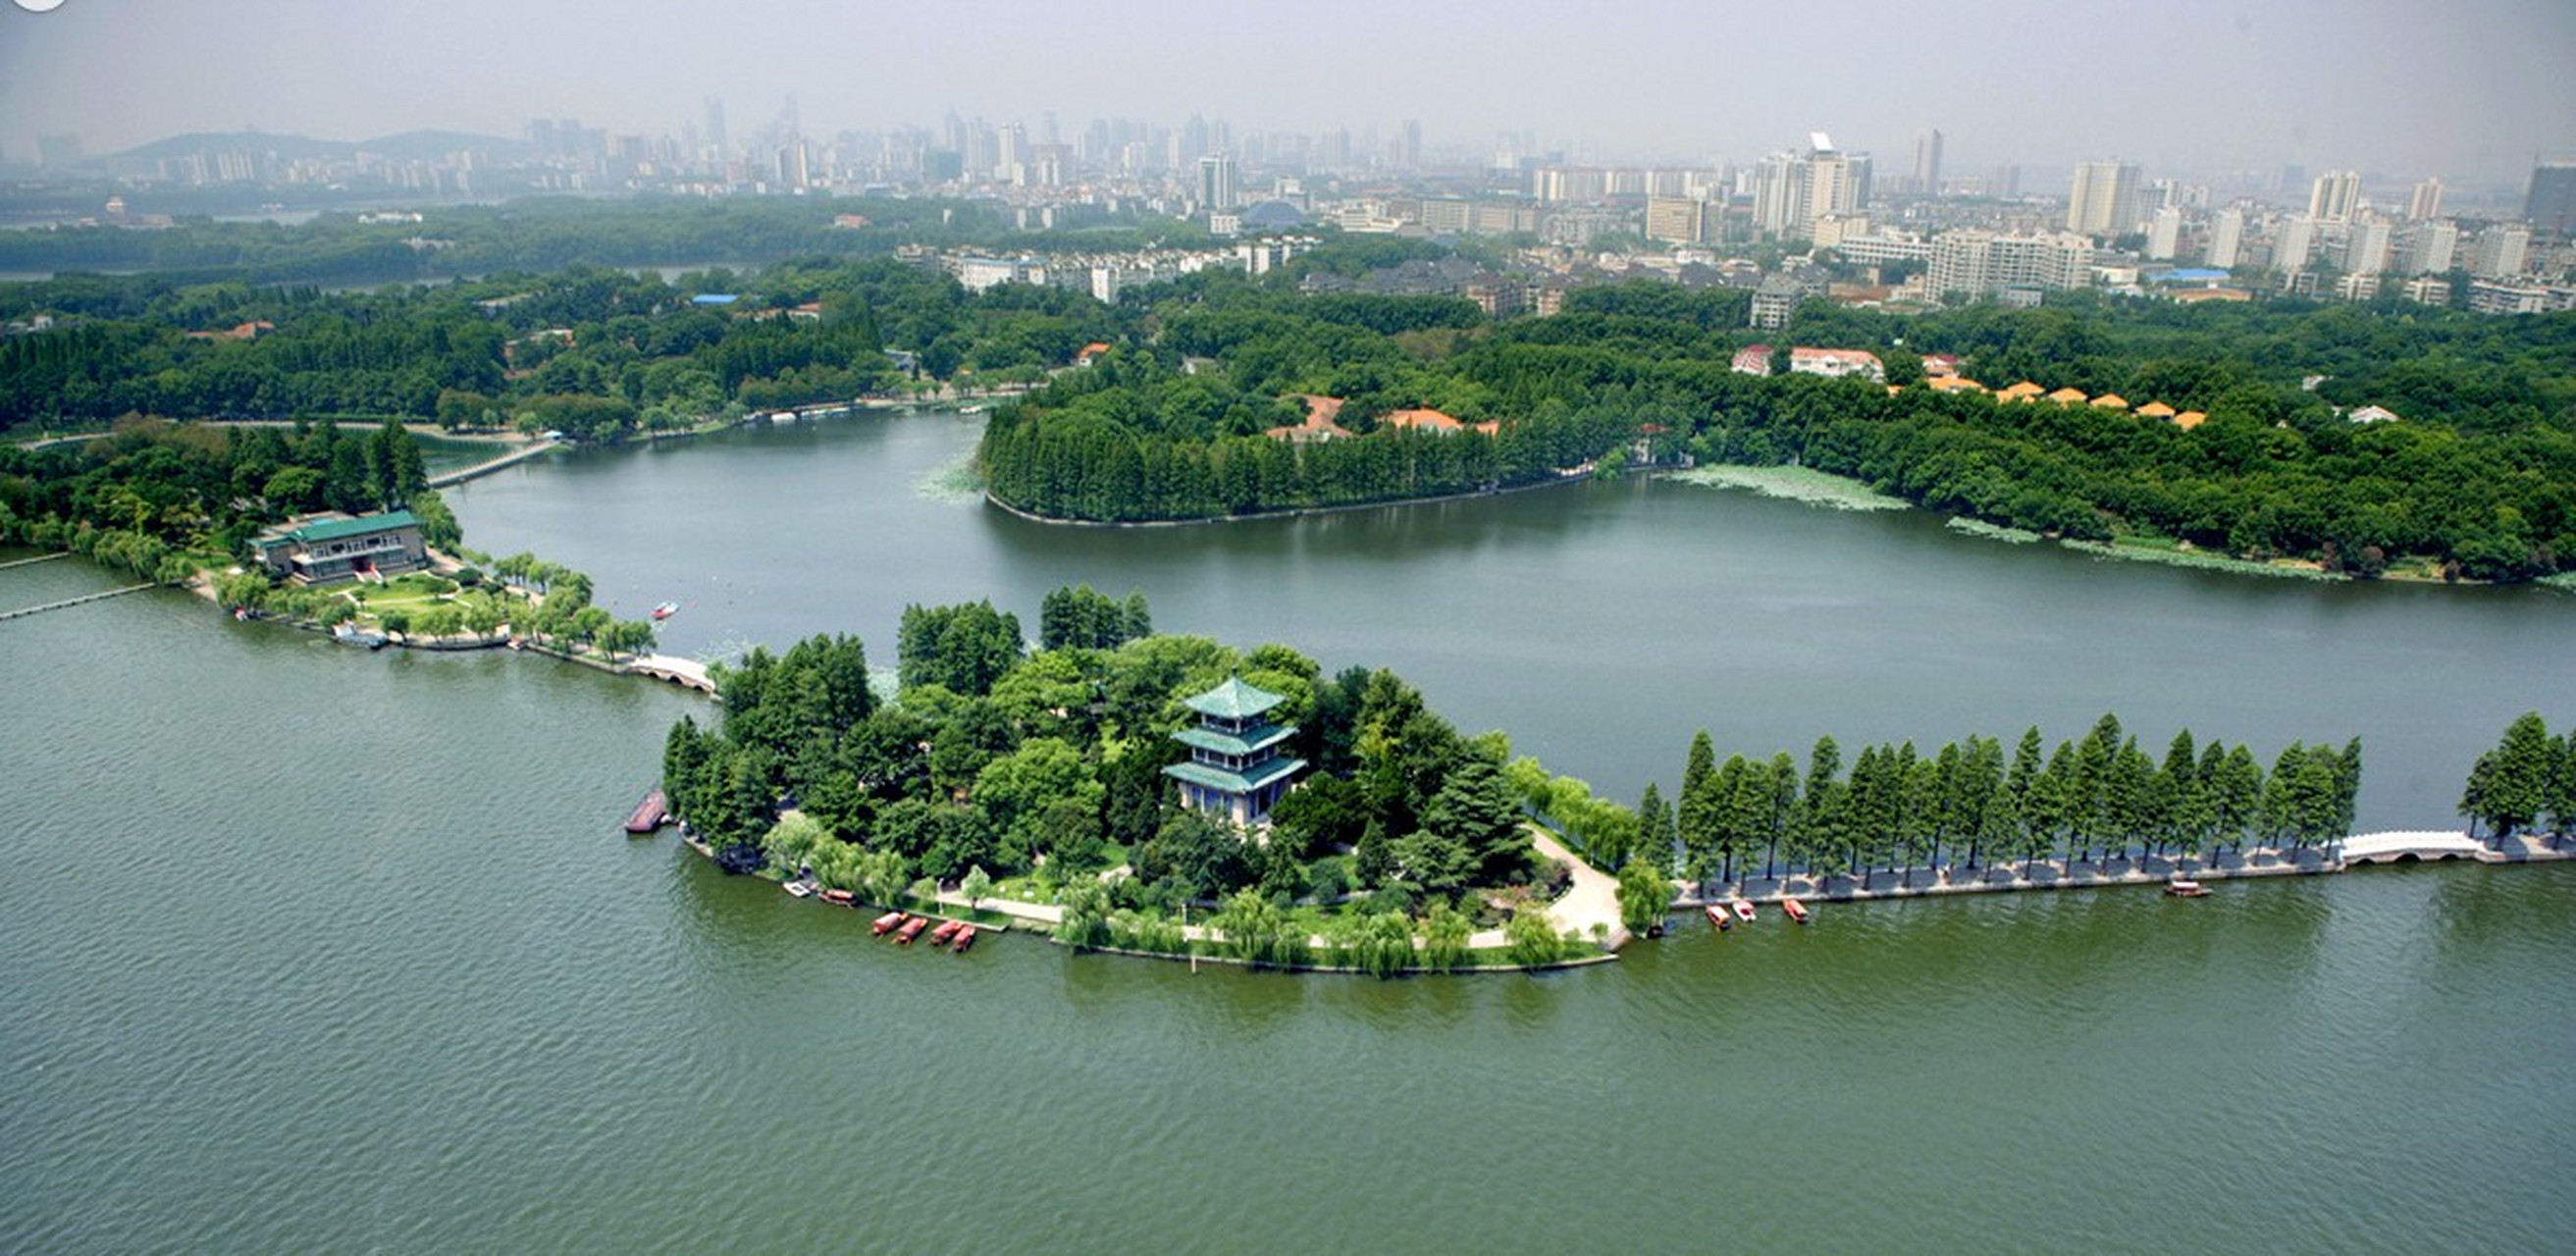 武汉东湖真的很大,大的像海洋一样,这里是中国最大的城中湖,想好好的